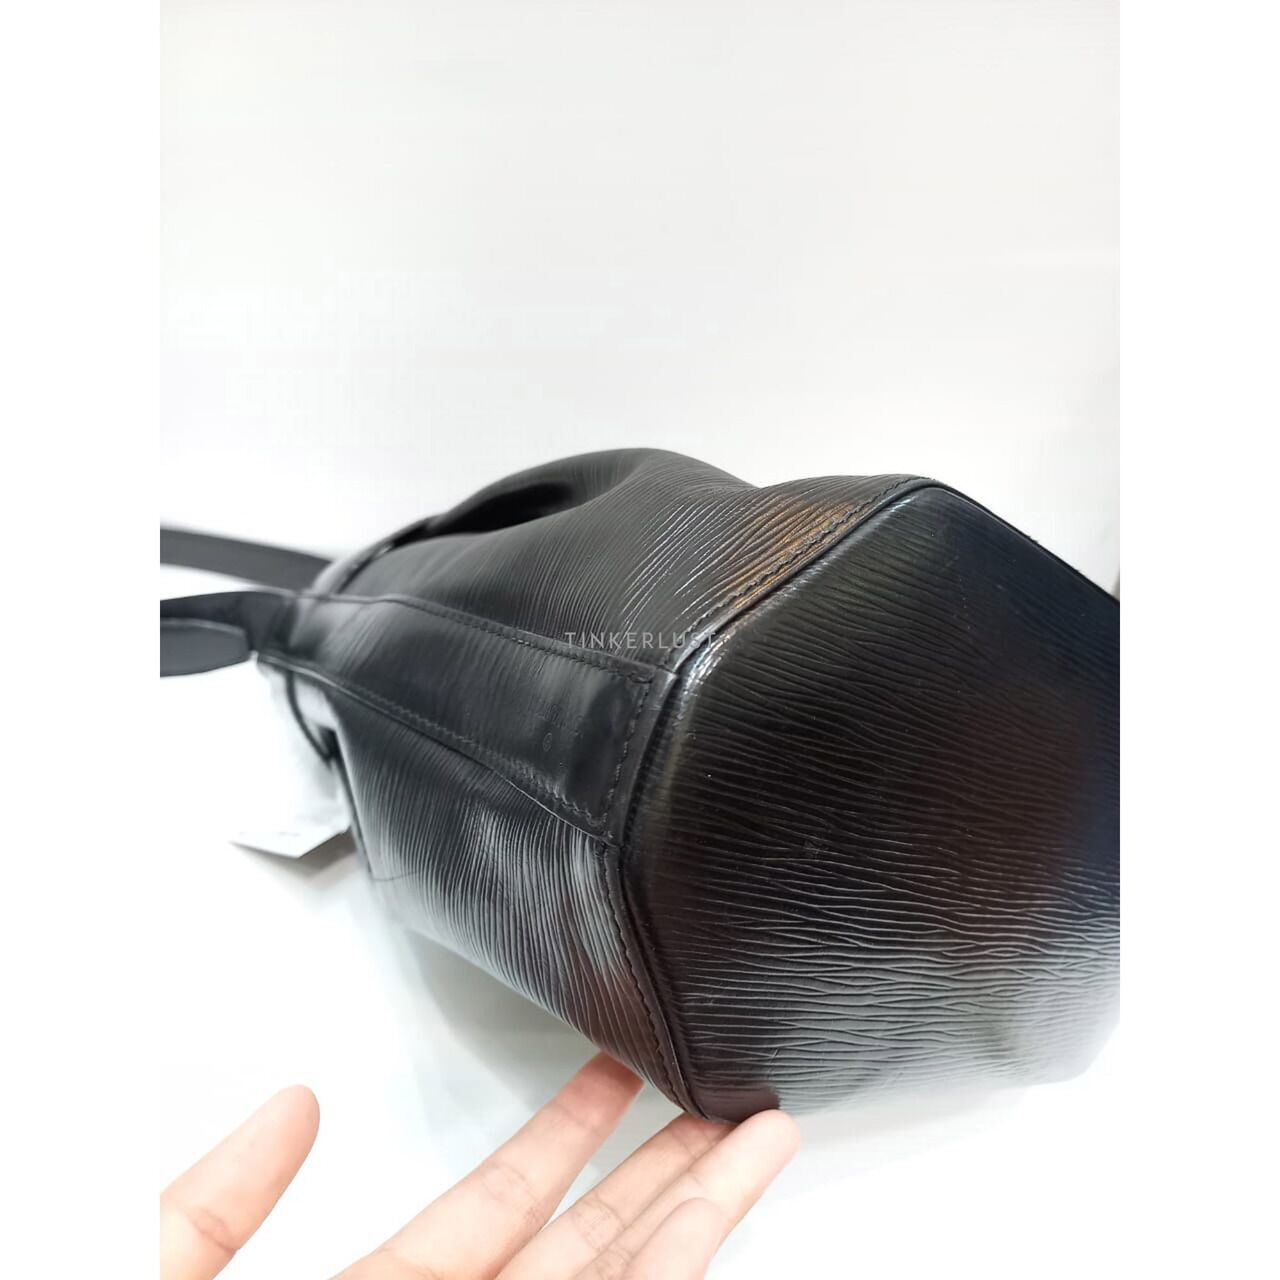 Louis Vuitton Sac Depaule Epi Leather Black Vintage 1991 Shoulder Bag